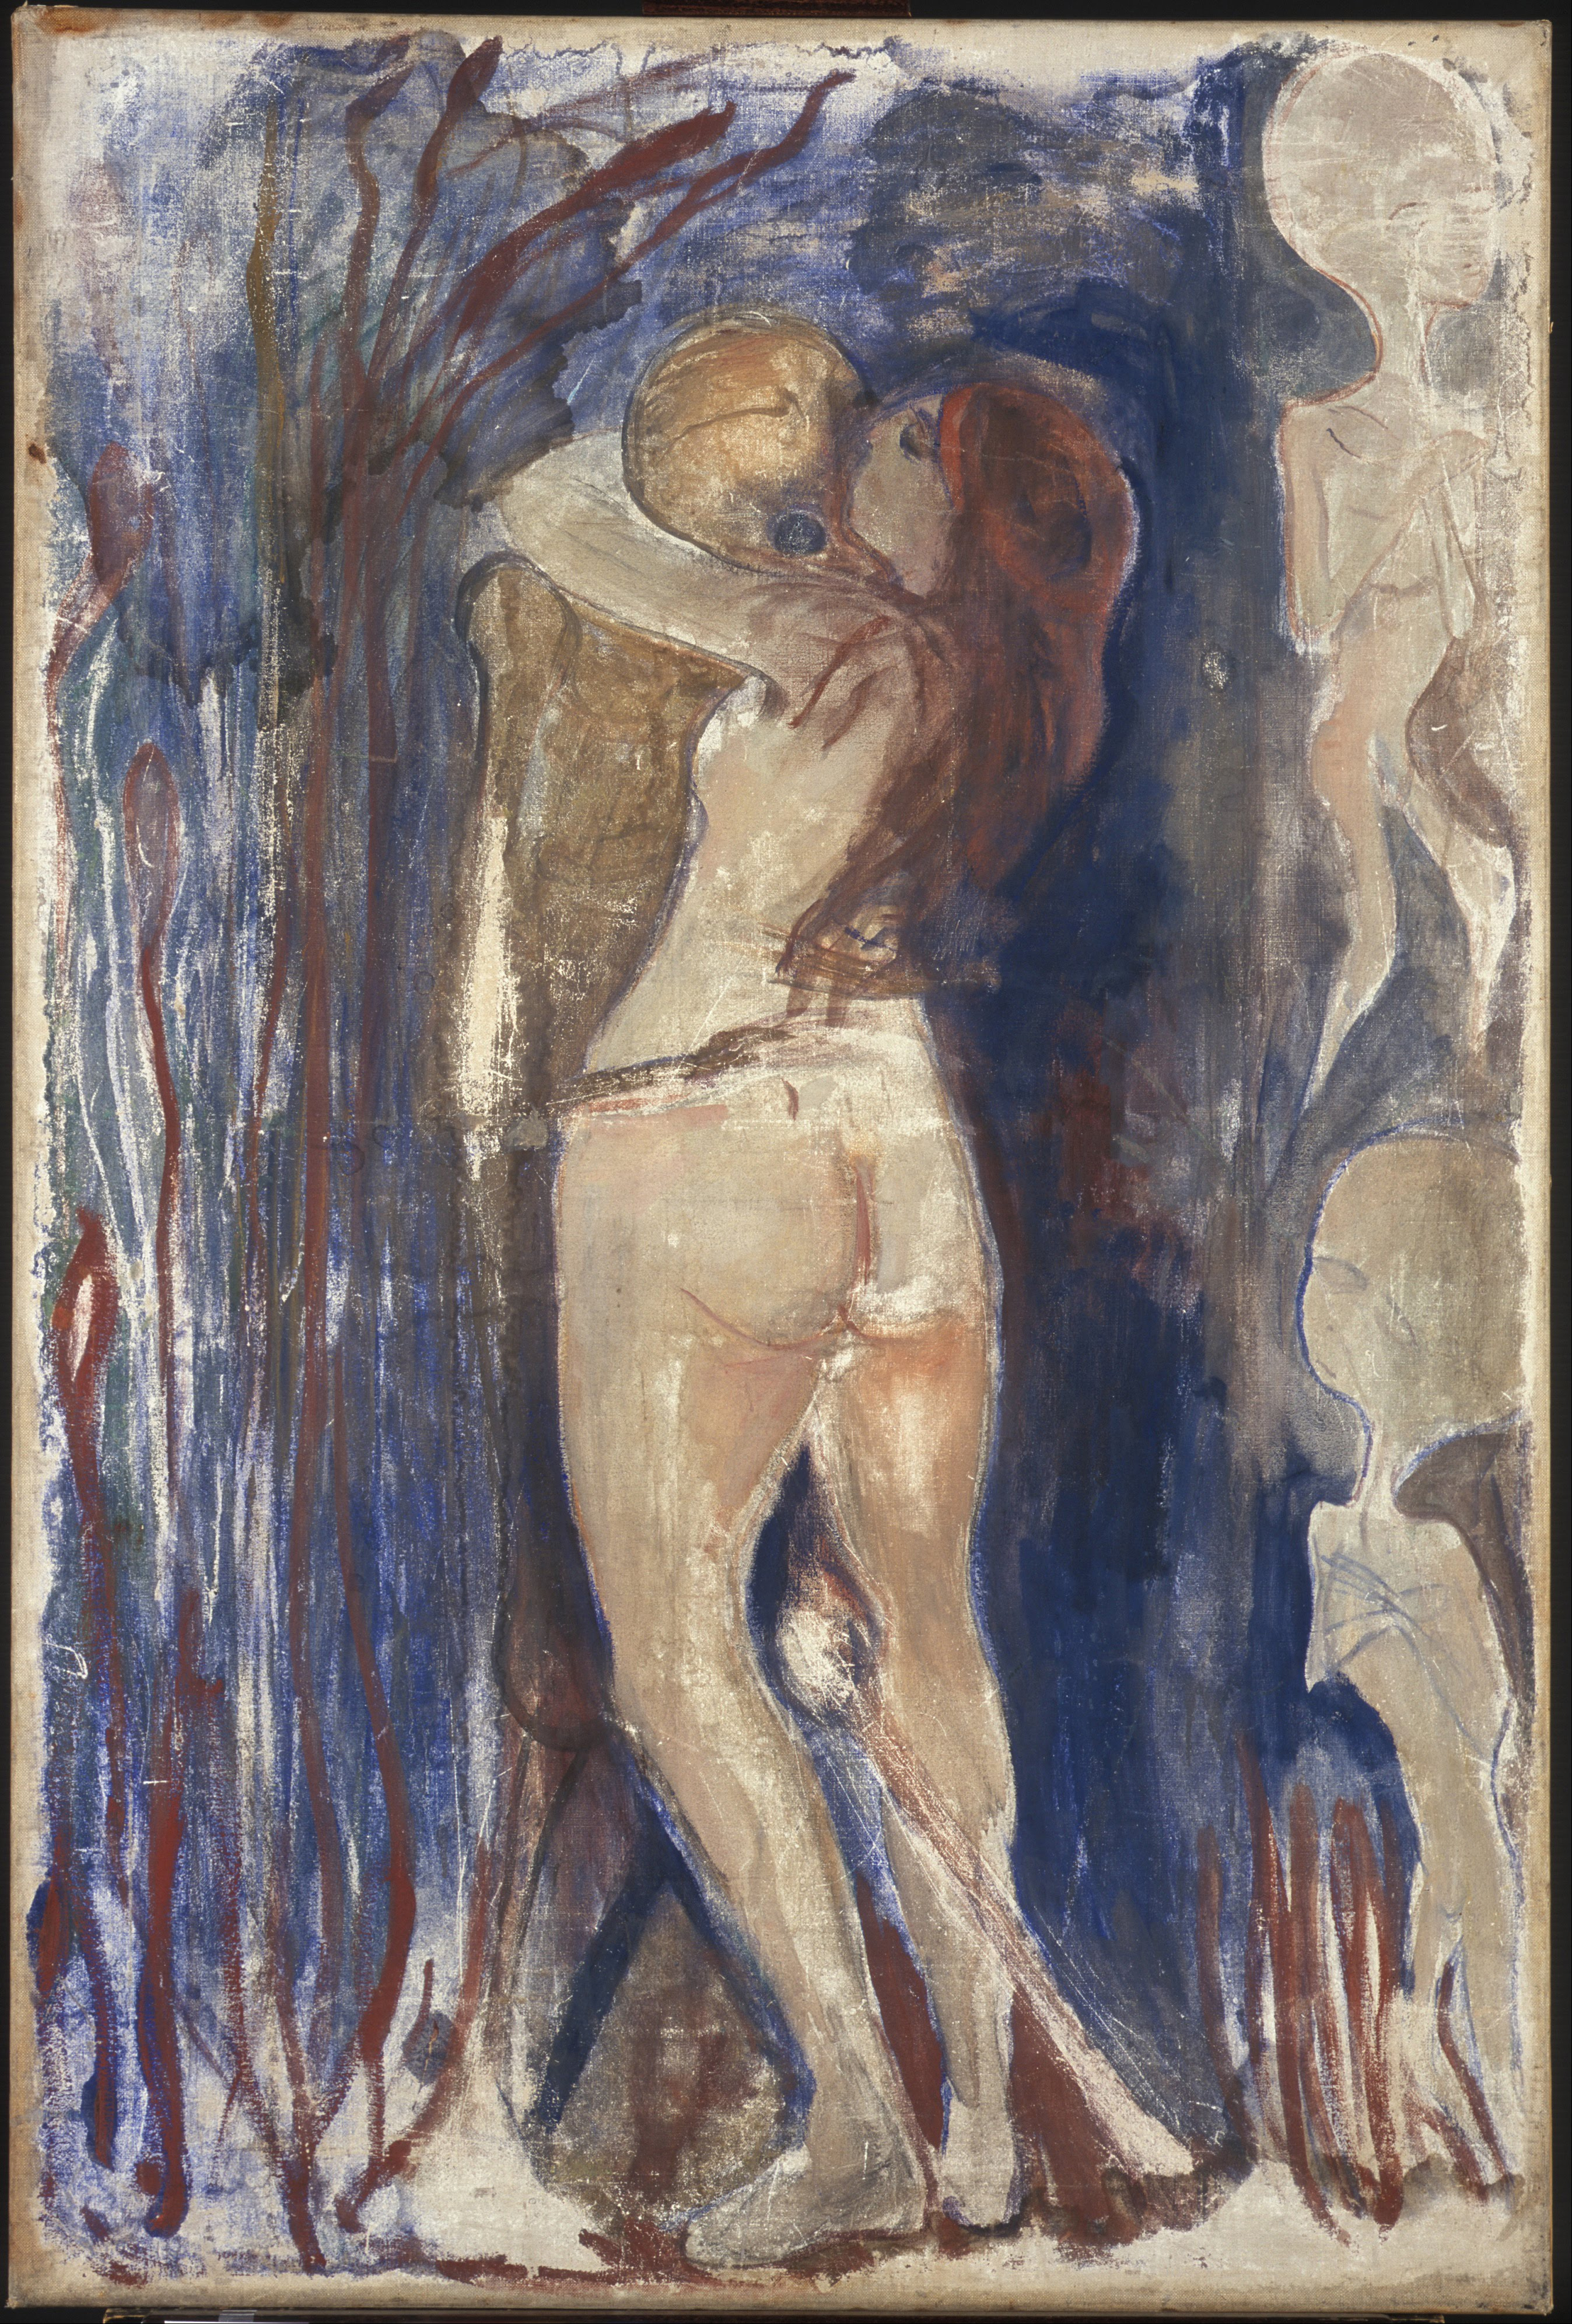 Śmierć i życie by Edvard Munch - 1894 - 86 x 128 cm 